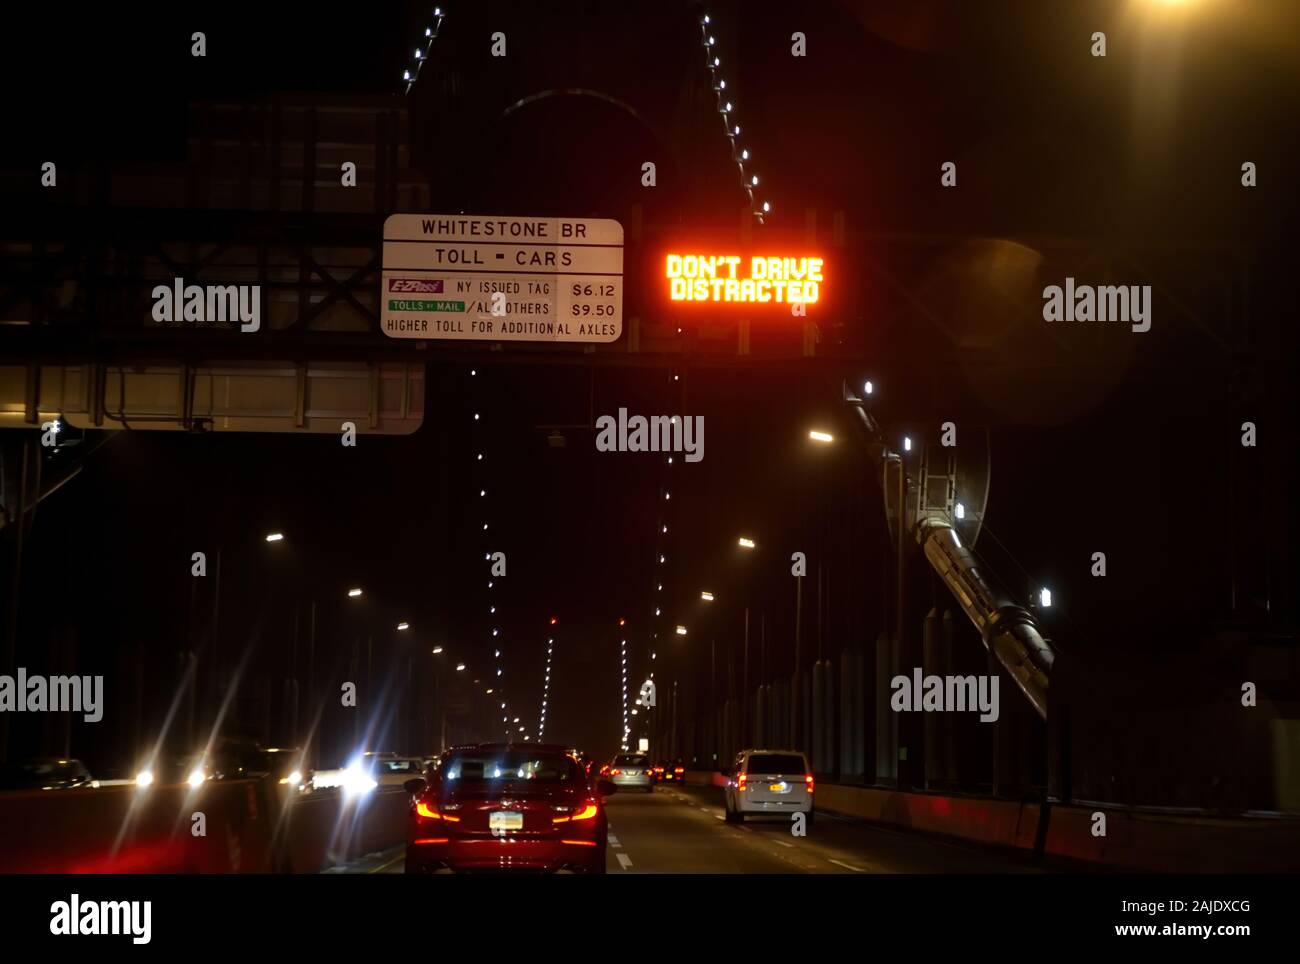 La Ciudad de Nueva York, NY, EE.UU. Dec 2019. Whitestone Bridge toll signo de la información publicada por la noche antes de cruzar. Foto de stock